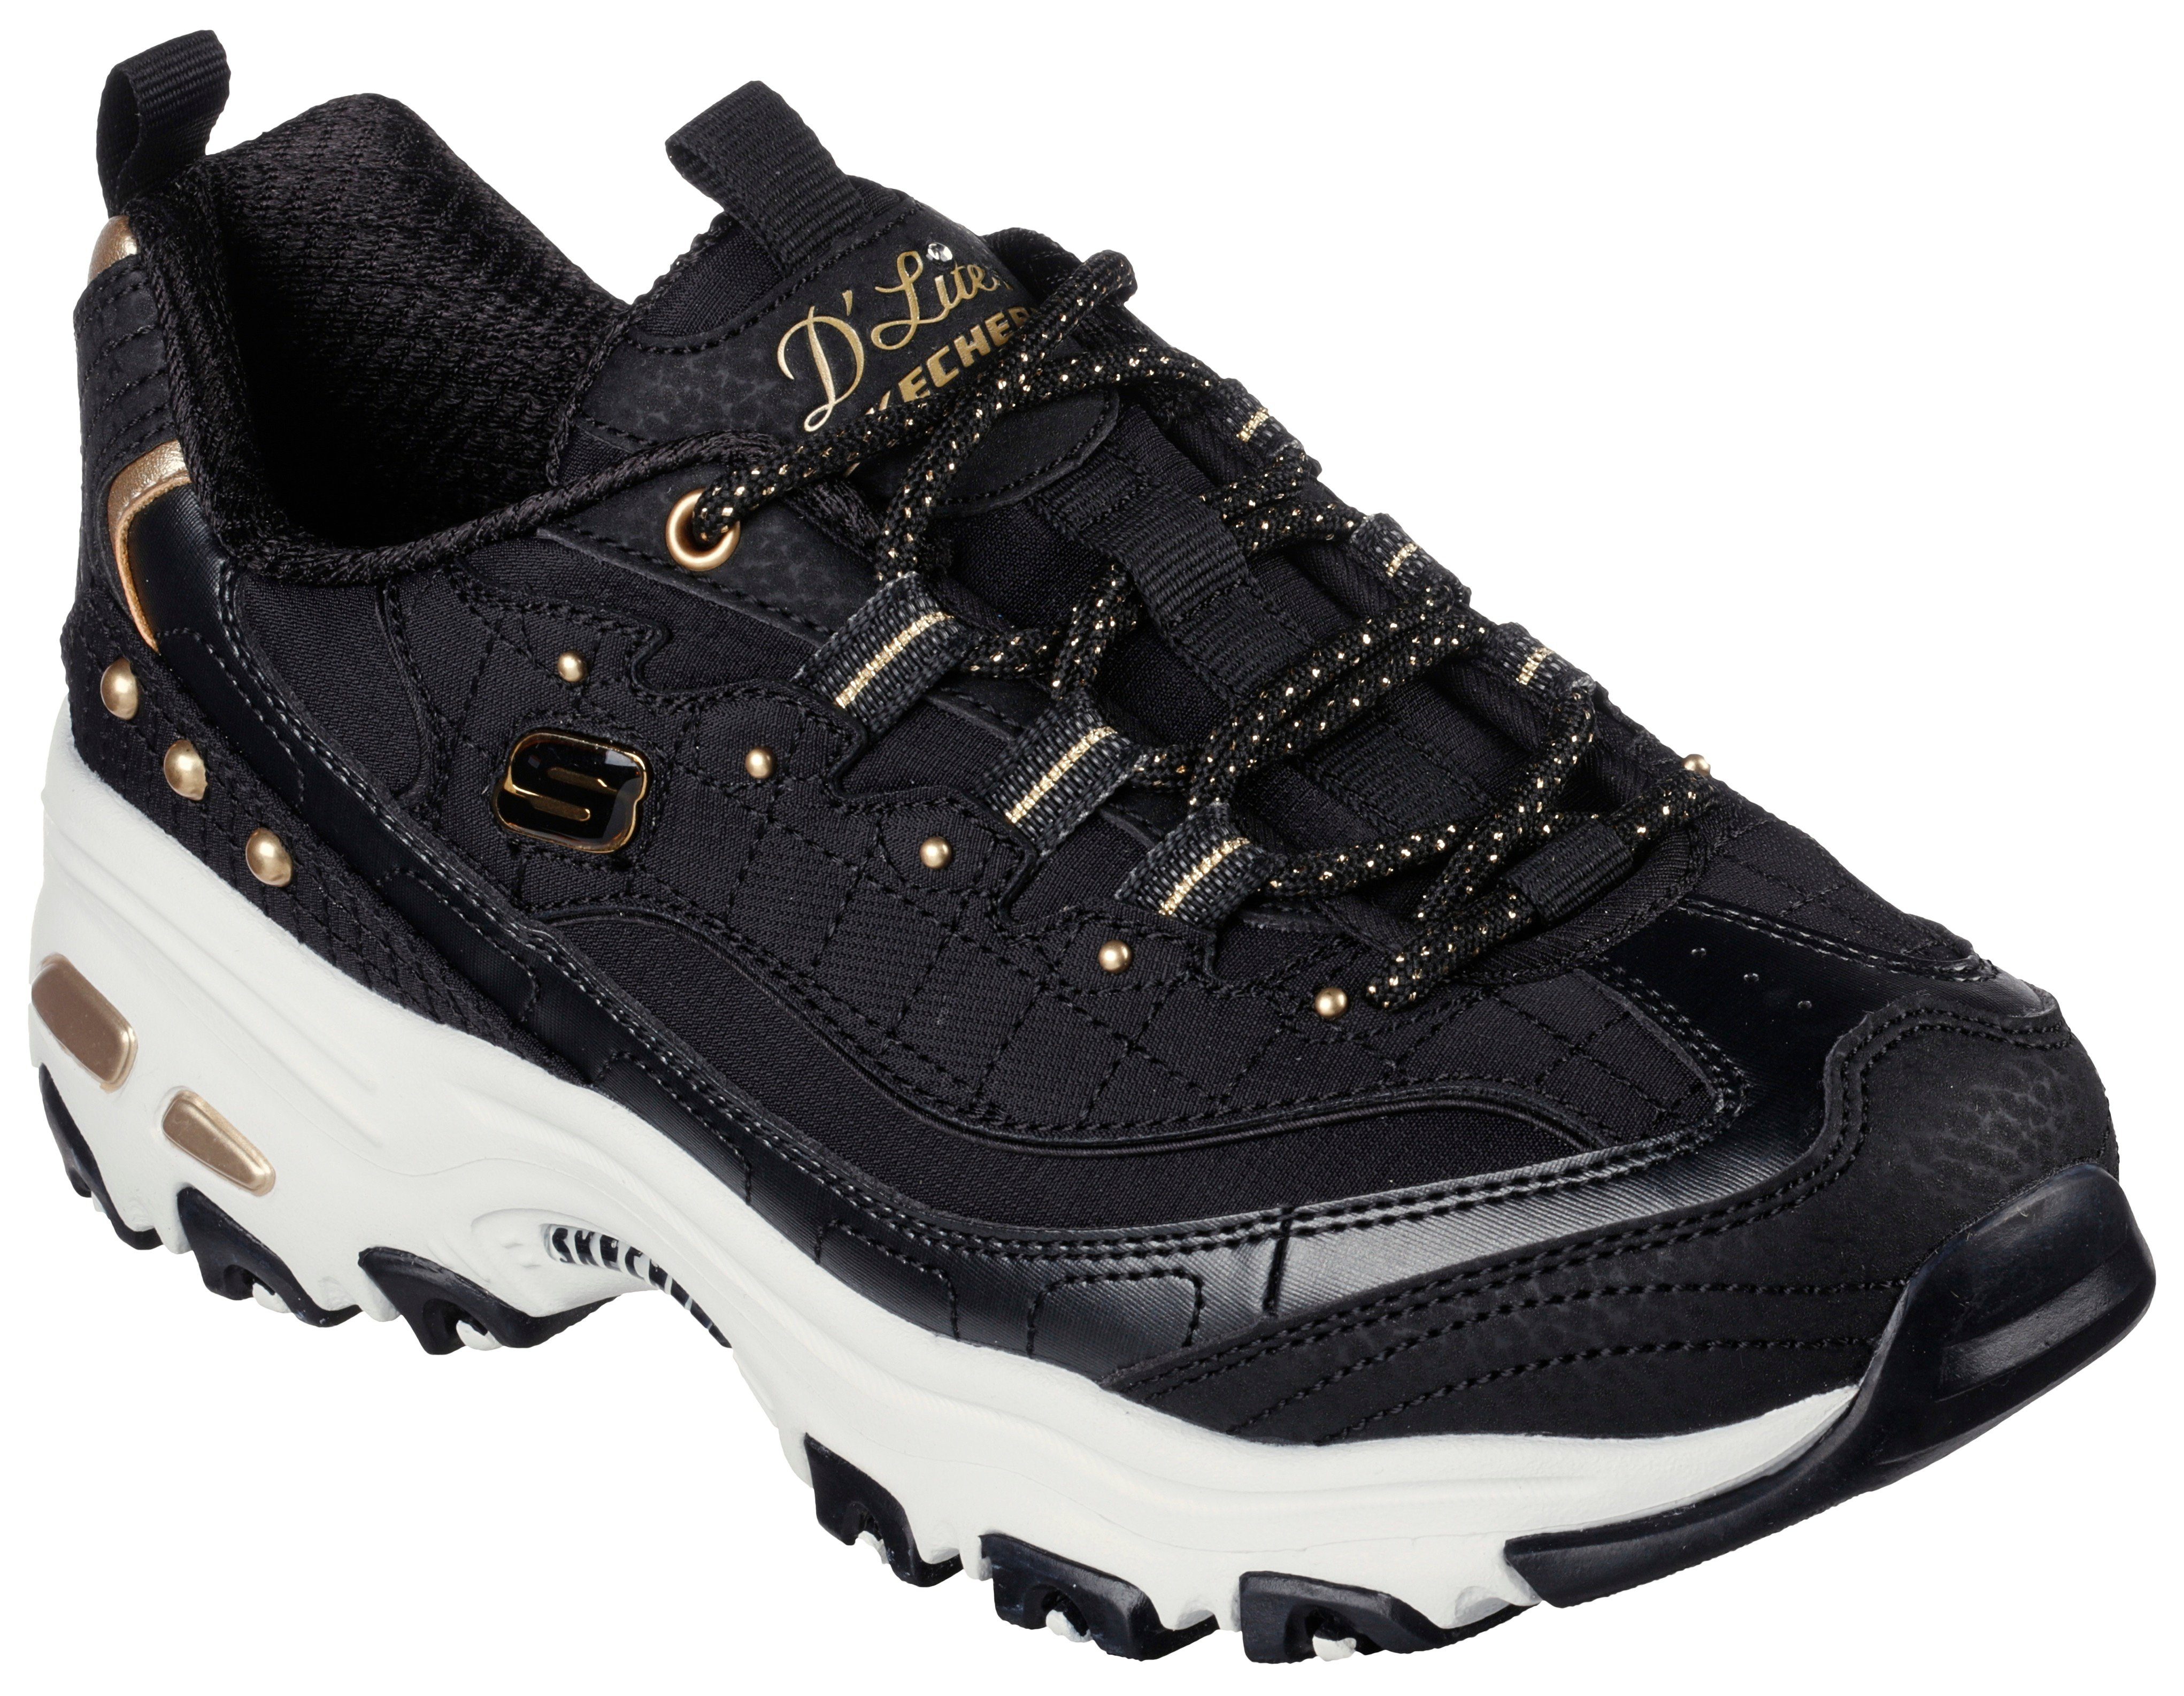 Skechers D'LITES Sneaker mit schönen Metallic-Details schwarz-goldfarben